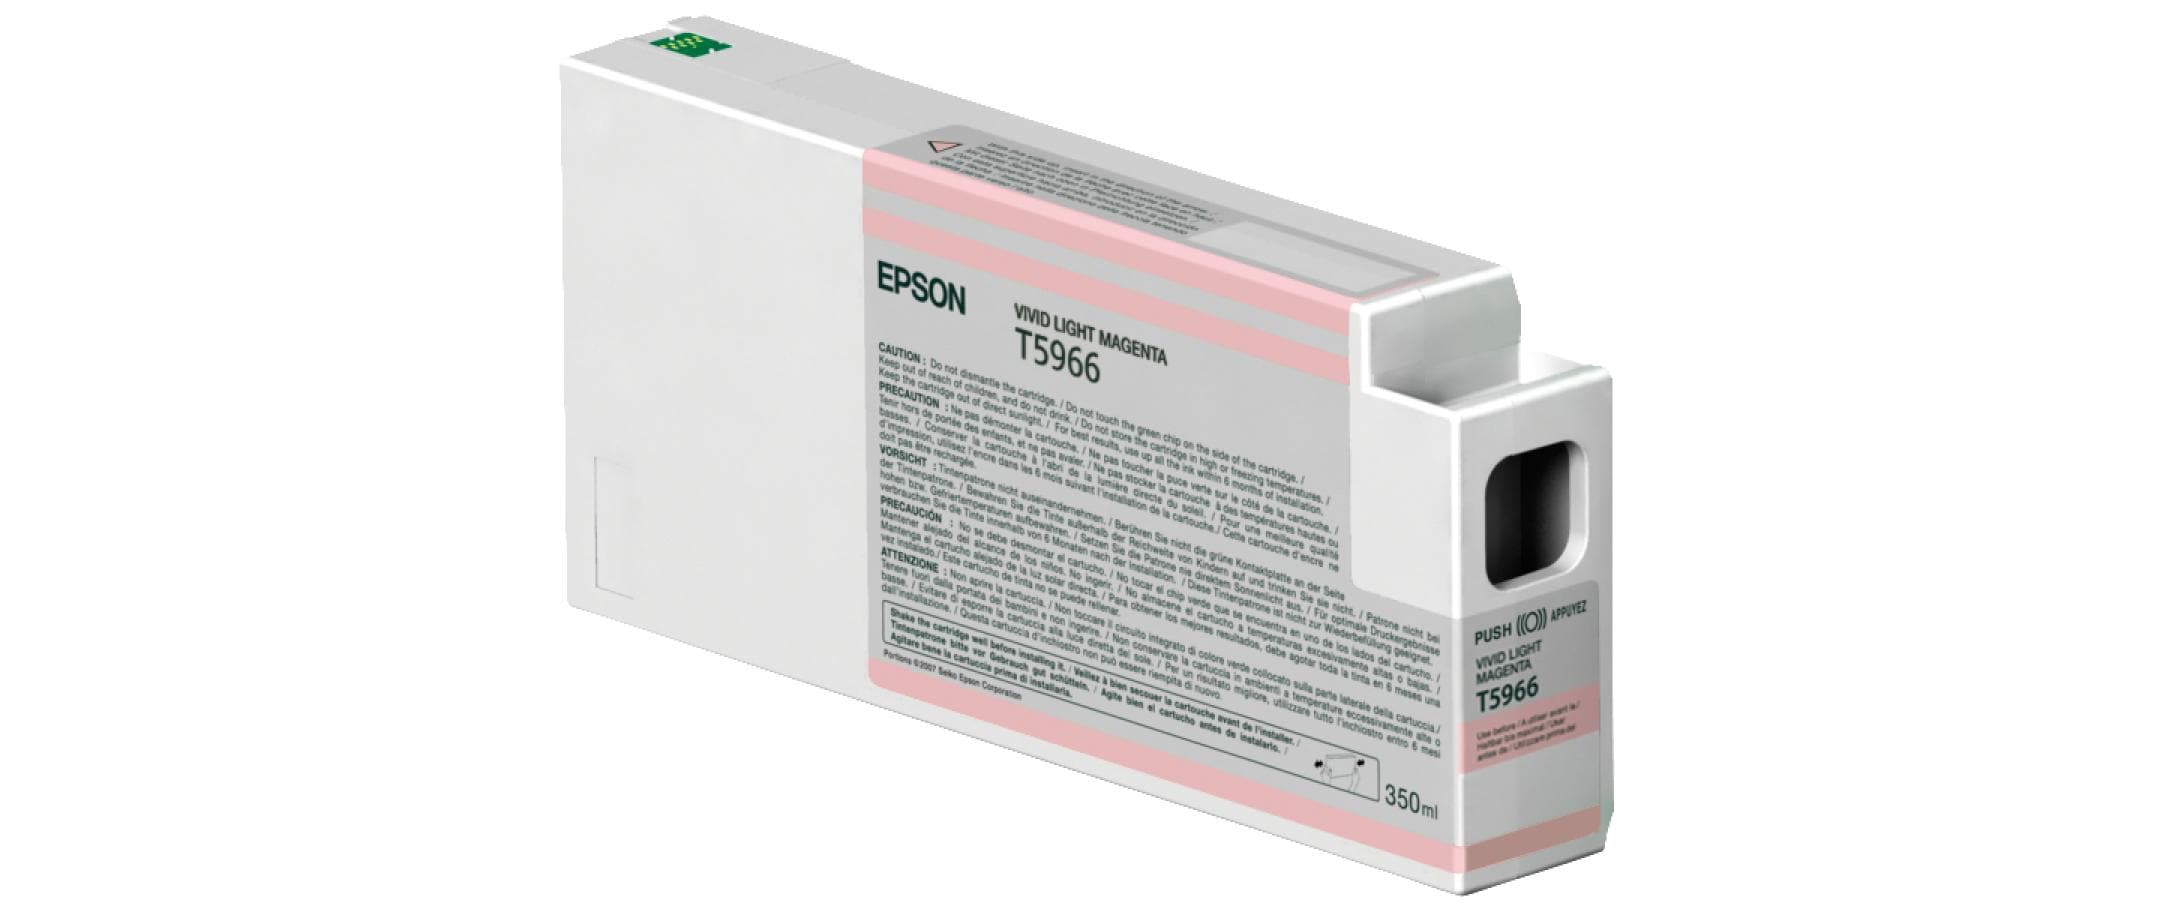 Epson Tinte C13T596600 Magenta